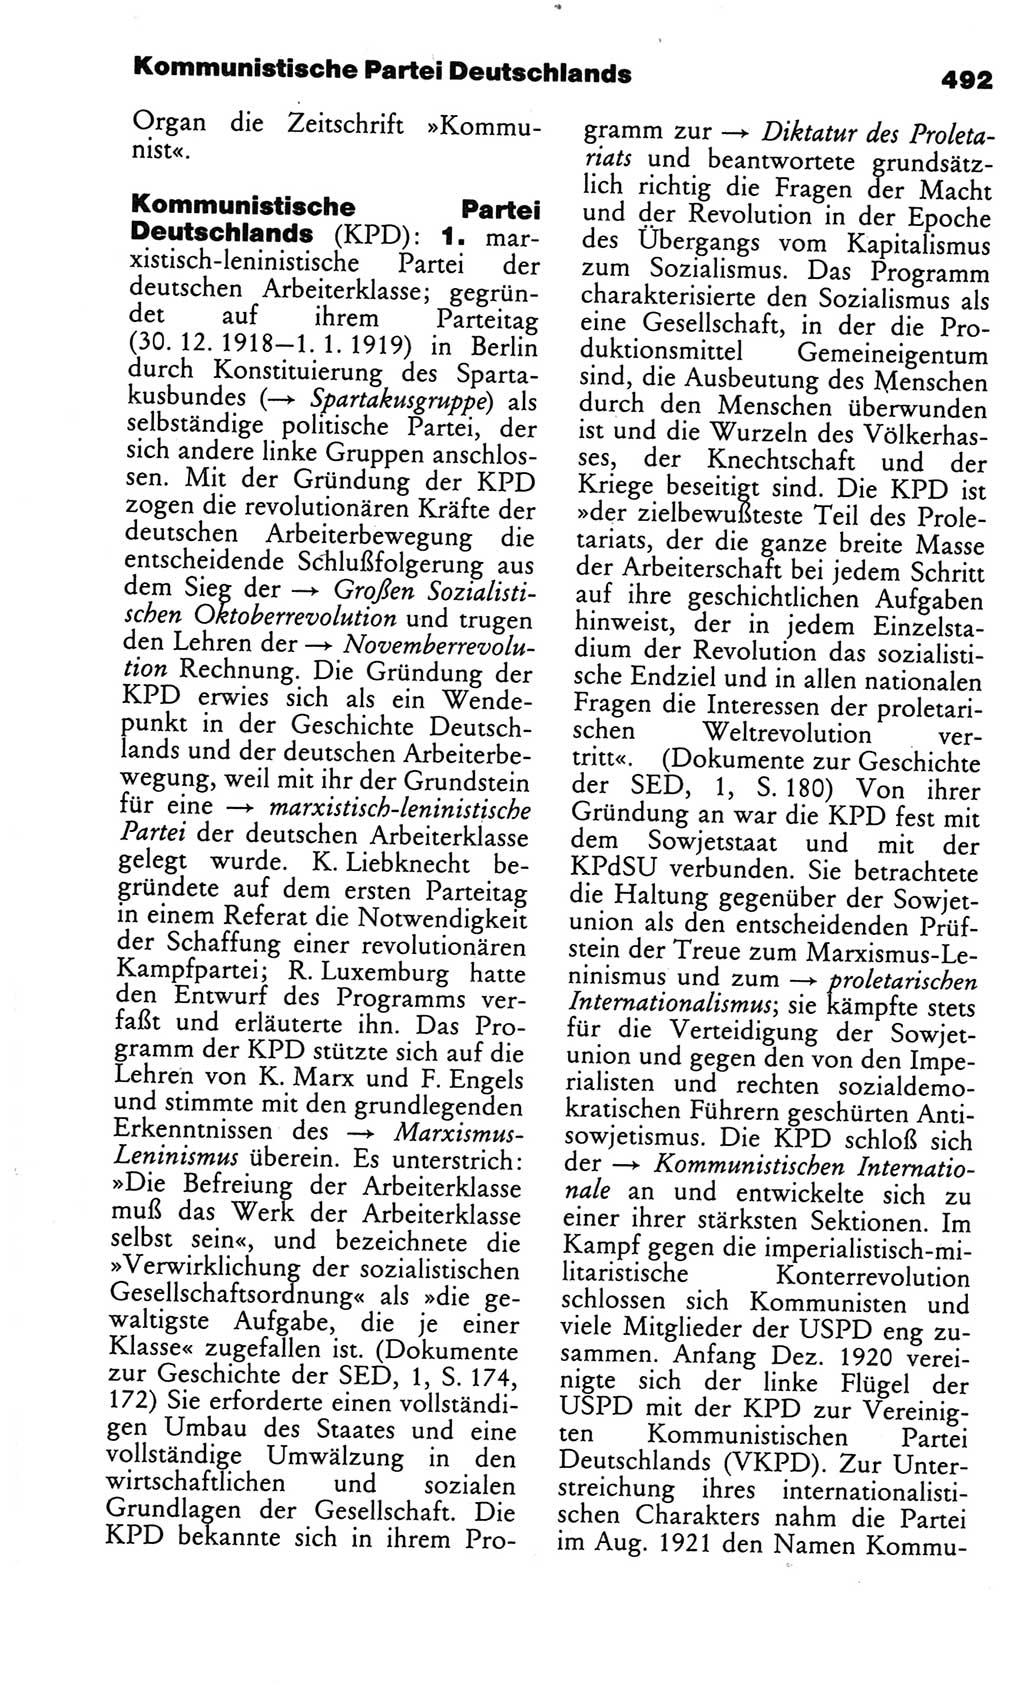 Kleines politisches Wörterbuch [Deutsche Demokratische Republik (DDR)] 1986, Seite 492 (Kl. pol. Wb. DDR 1986, S. 492)